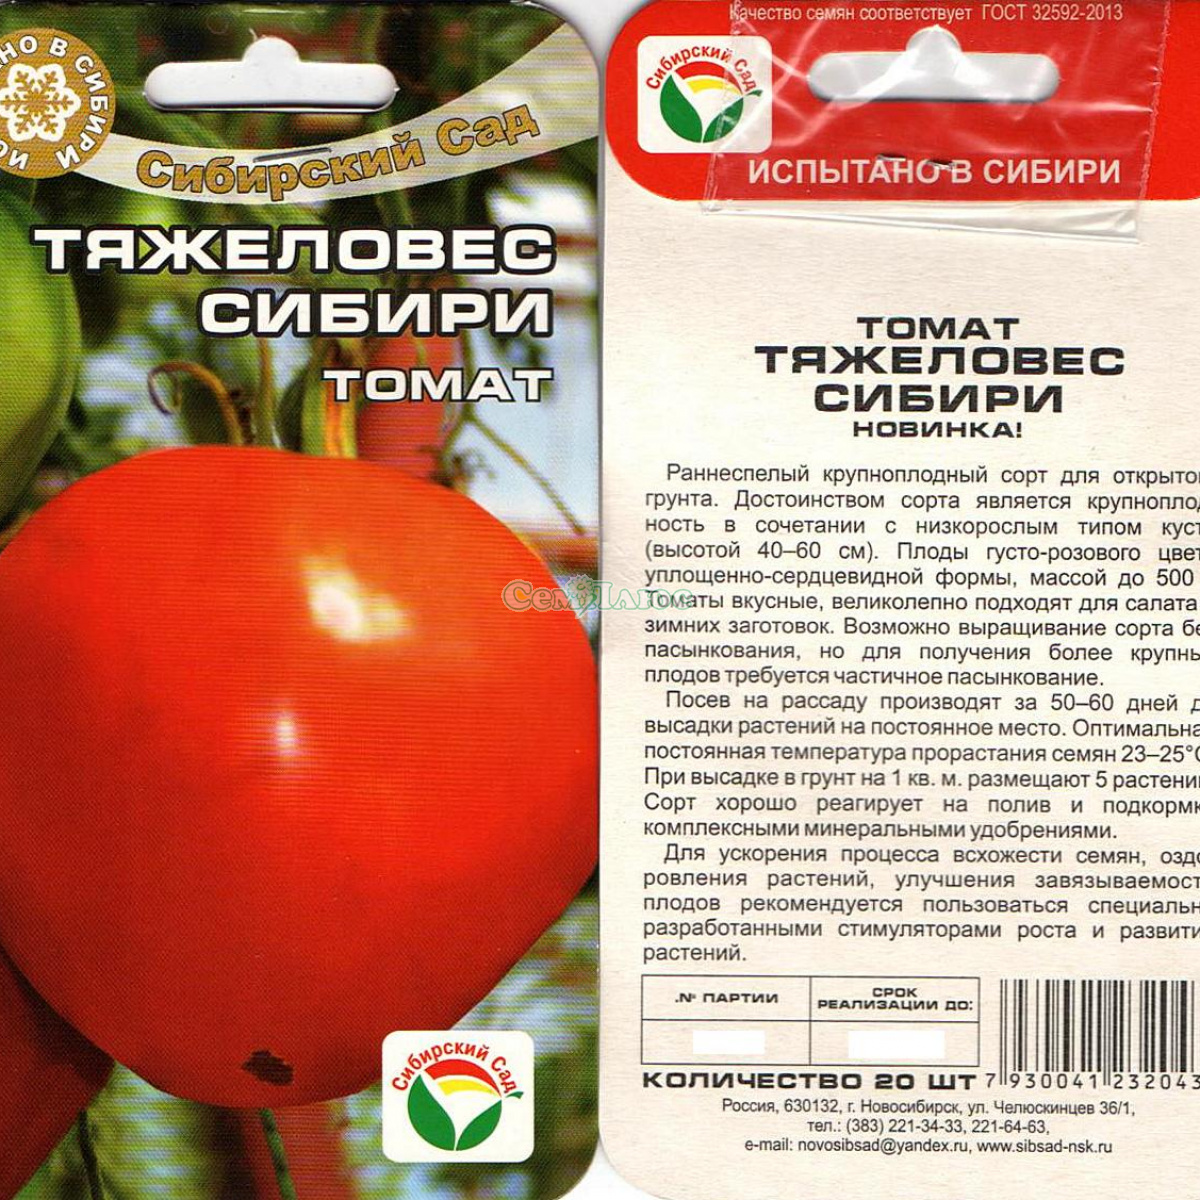 Характеристика и описание томата “ранняя любовь”